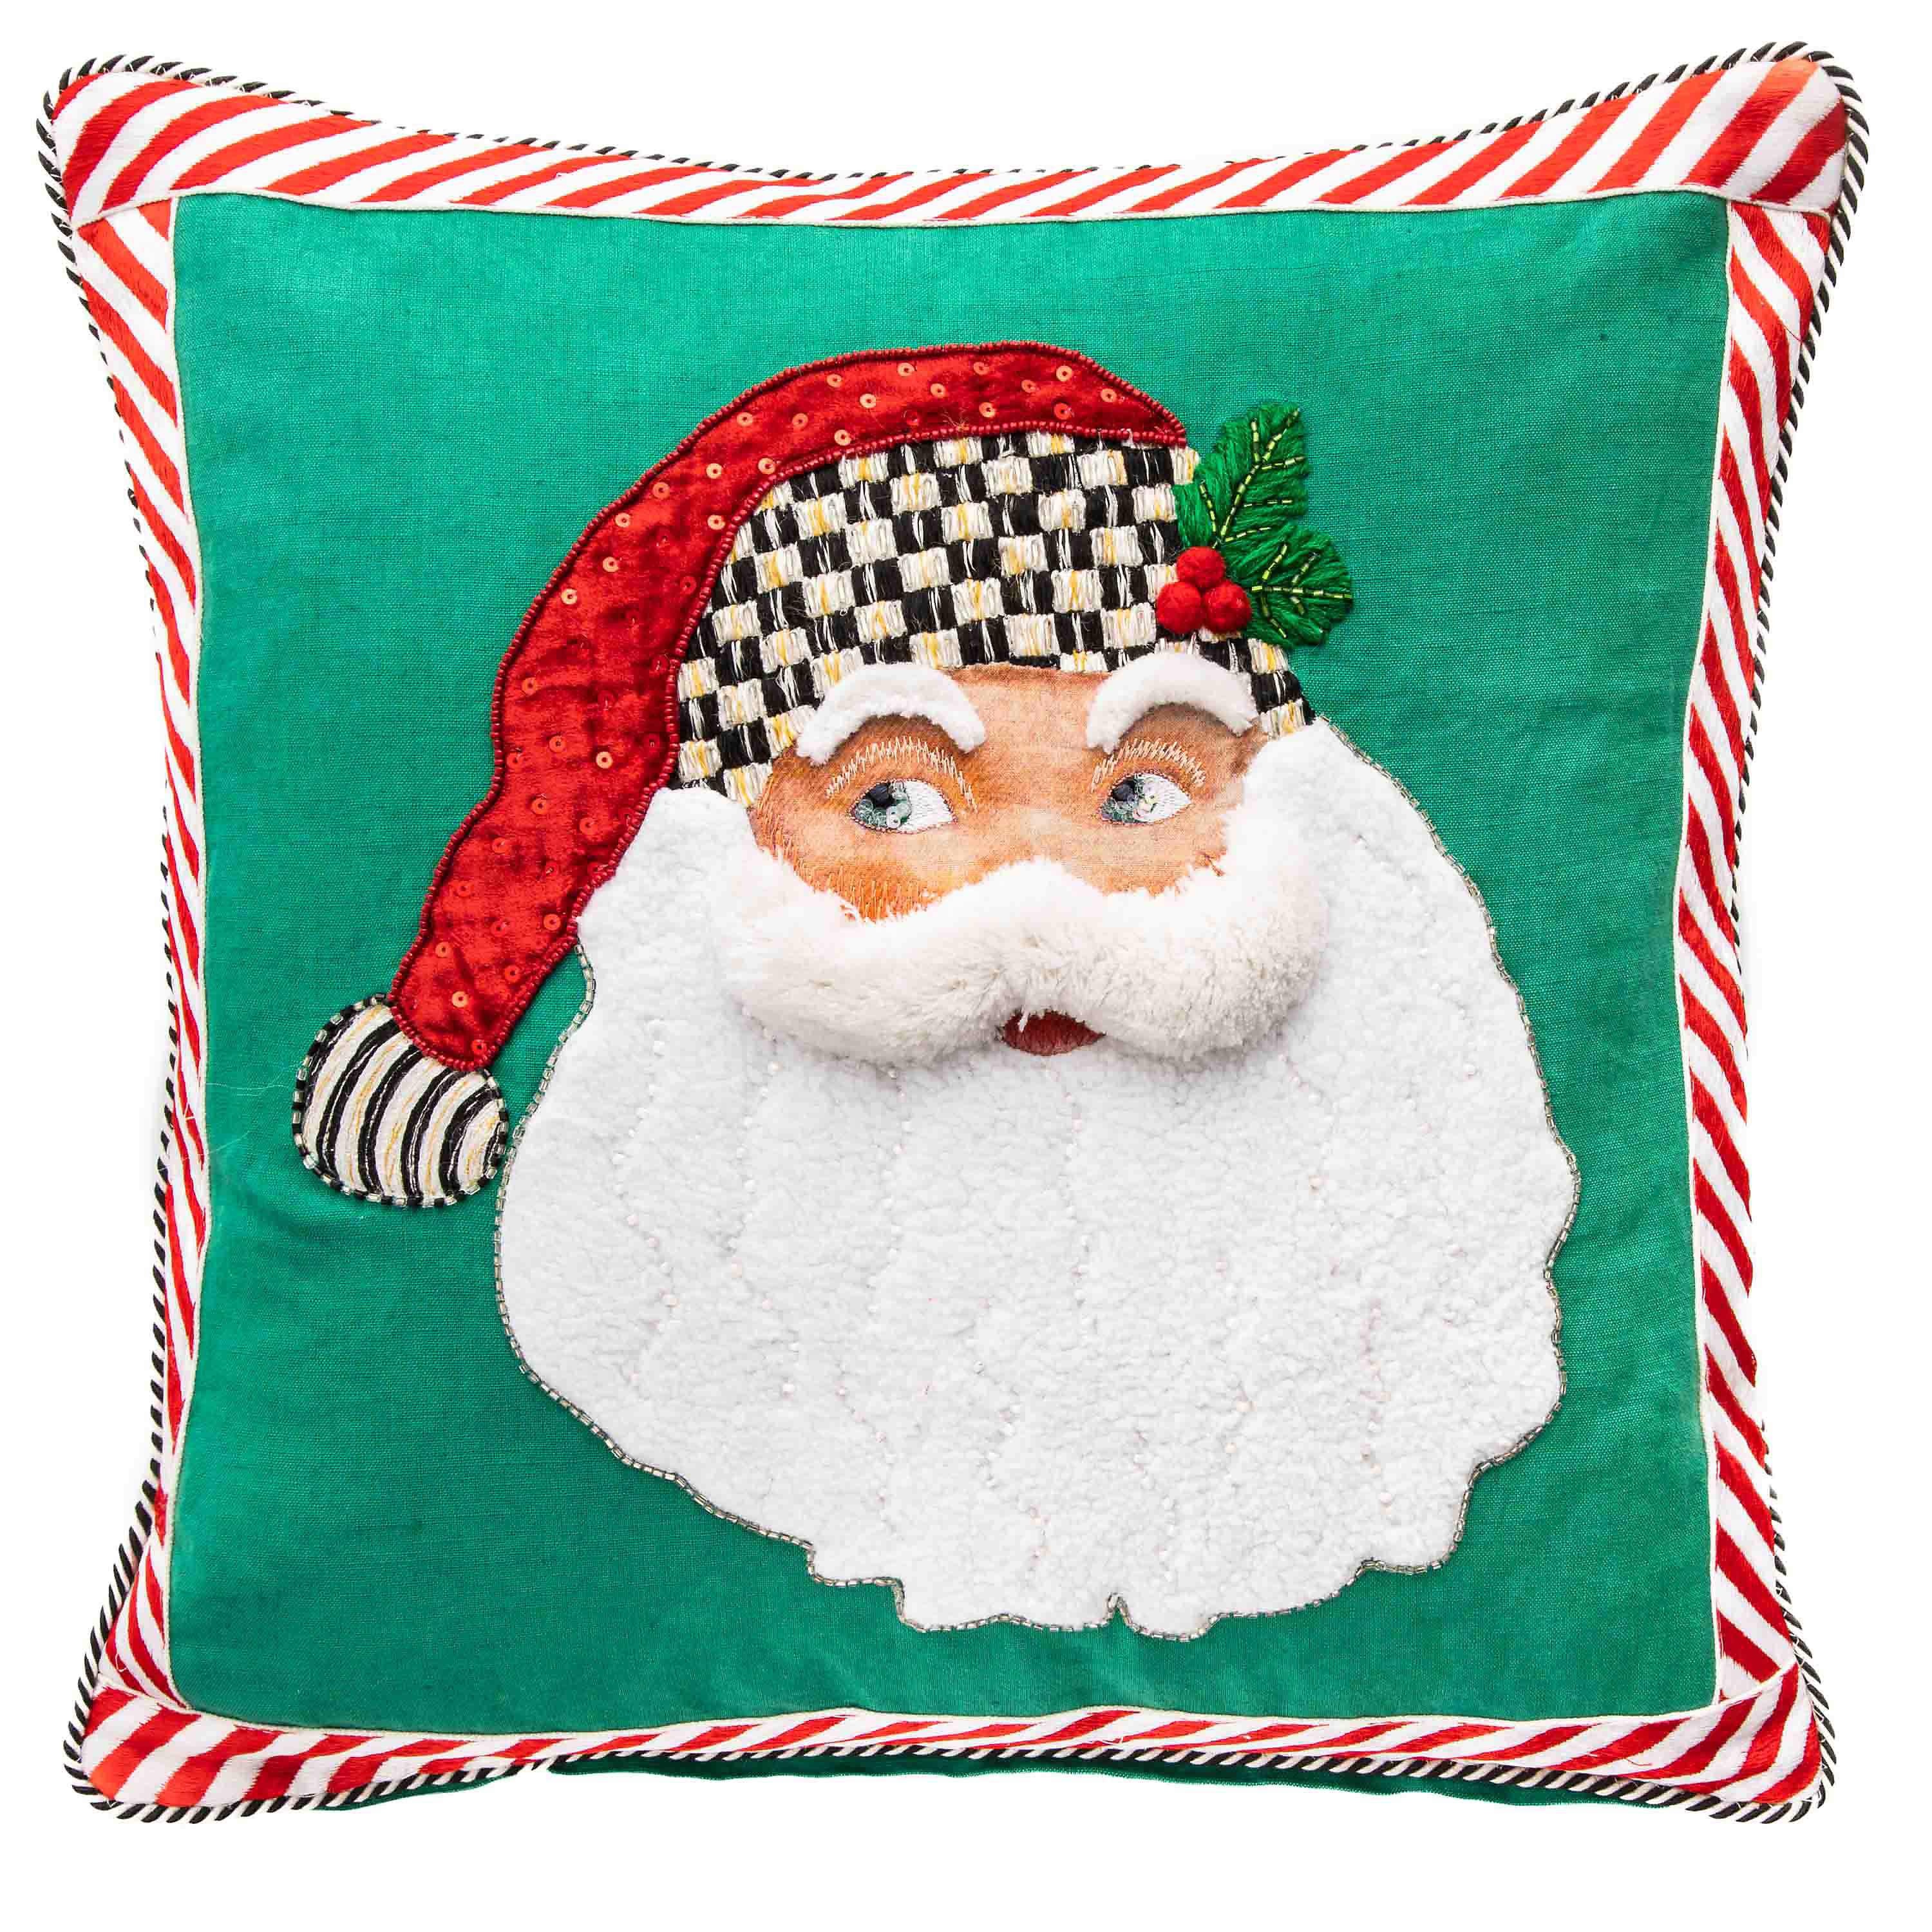 Retro Santa Throw Pillow mackenzie-childs Panama 0